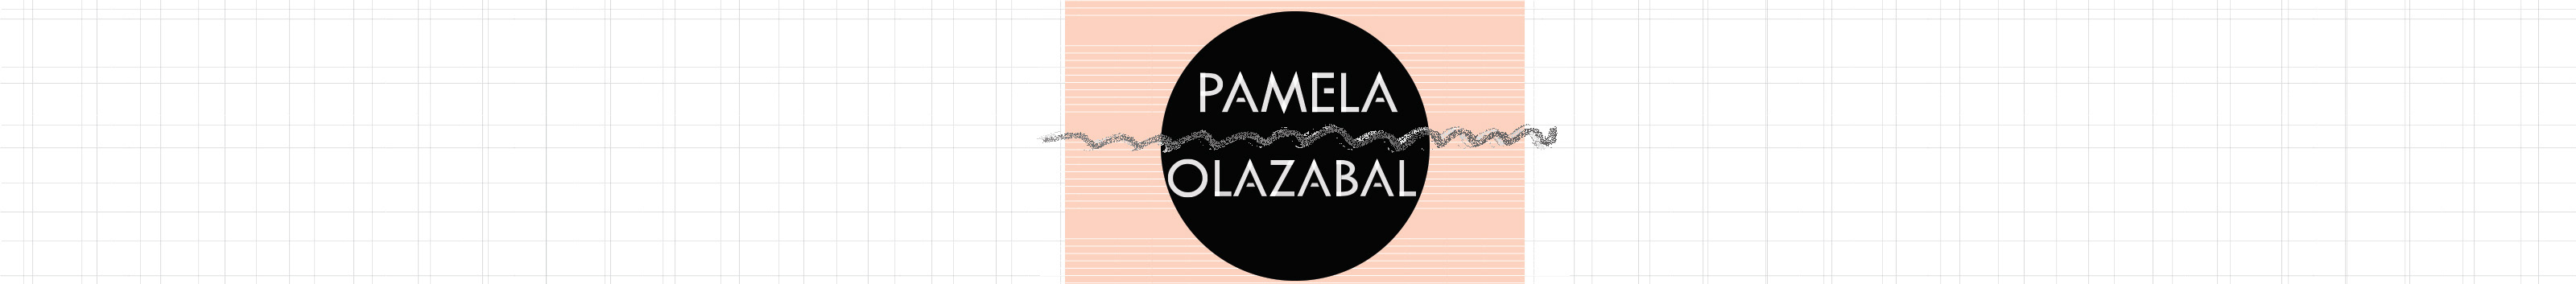 Pamela Olazabal's profile banner